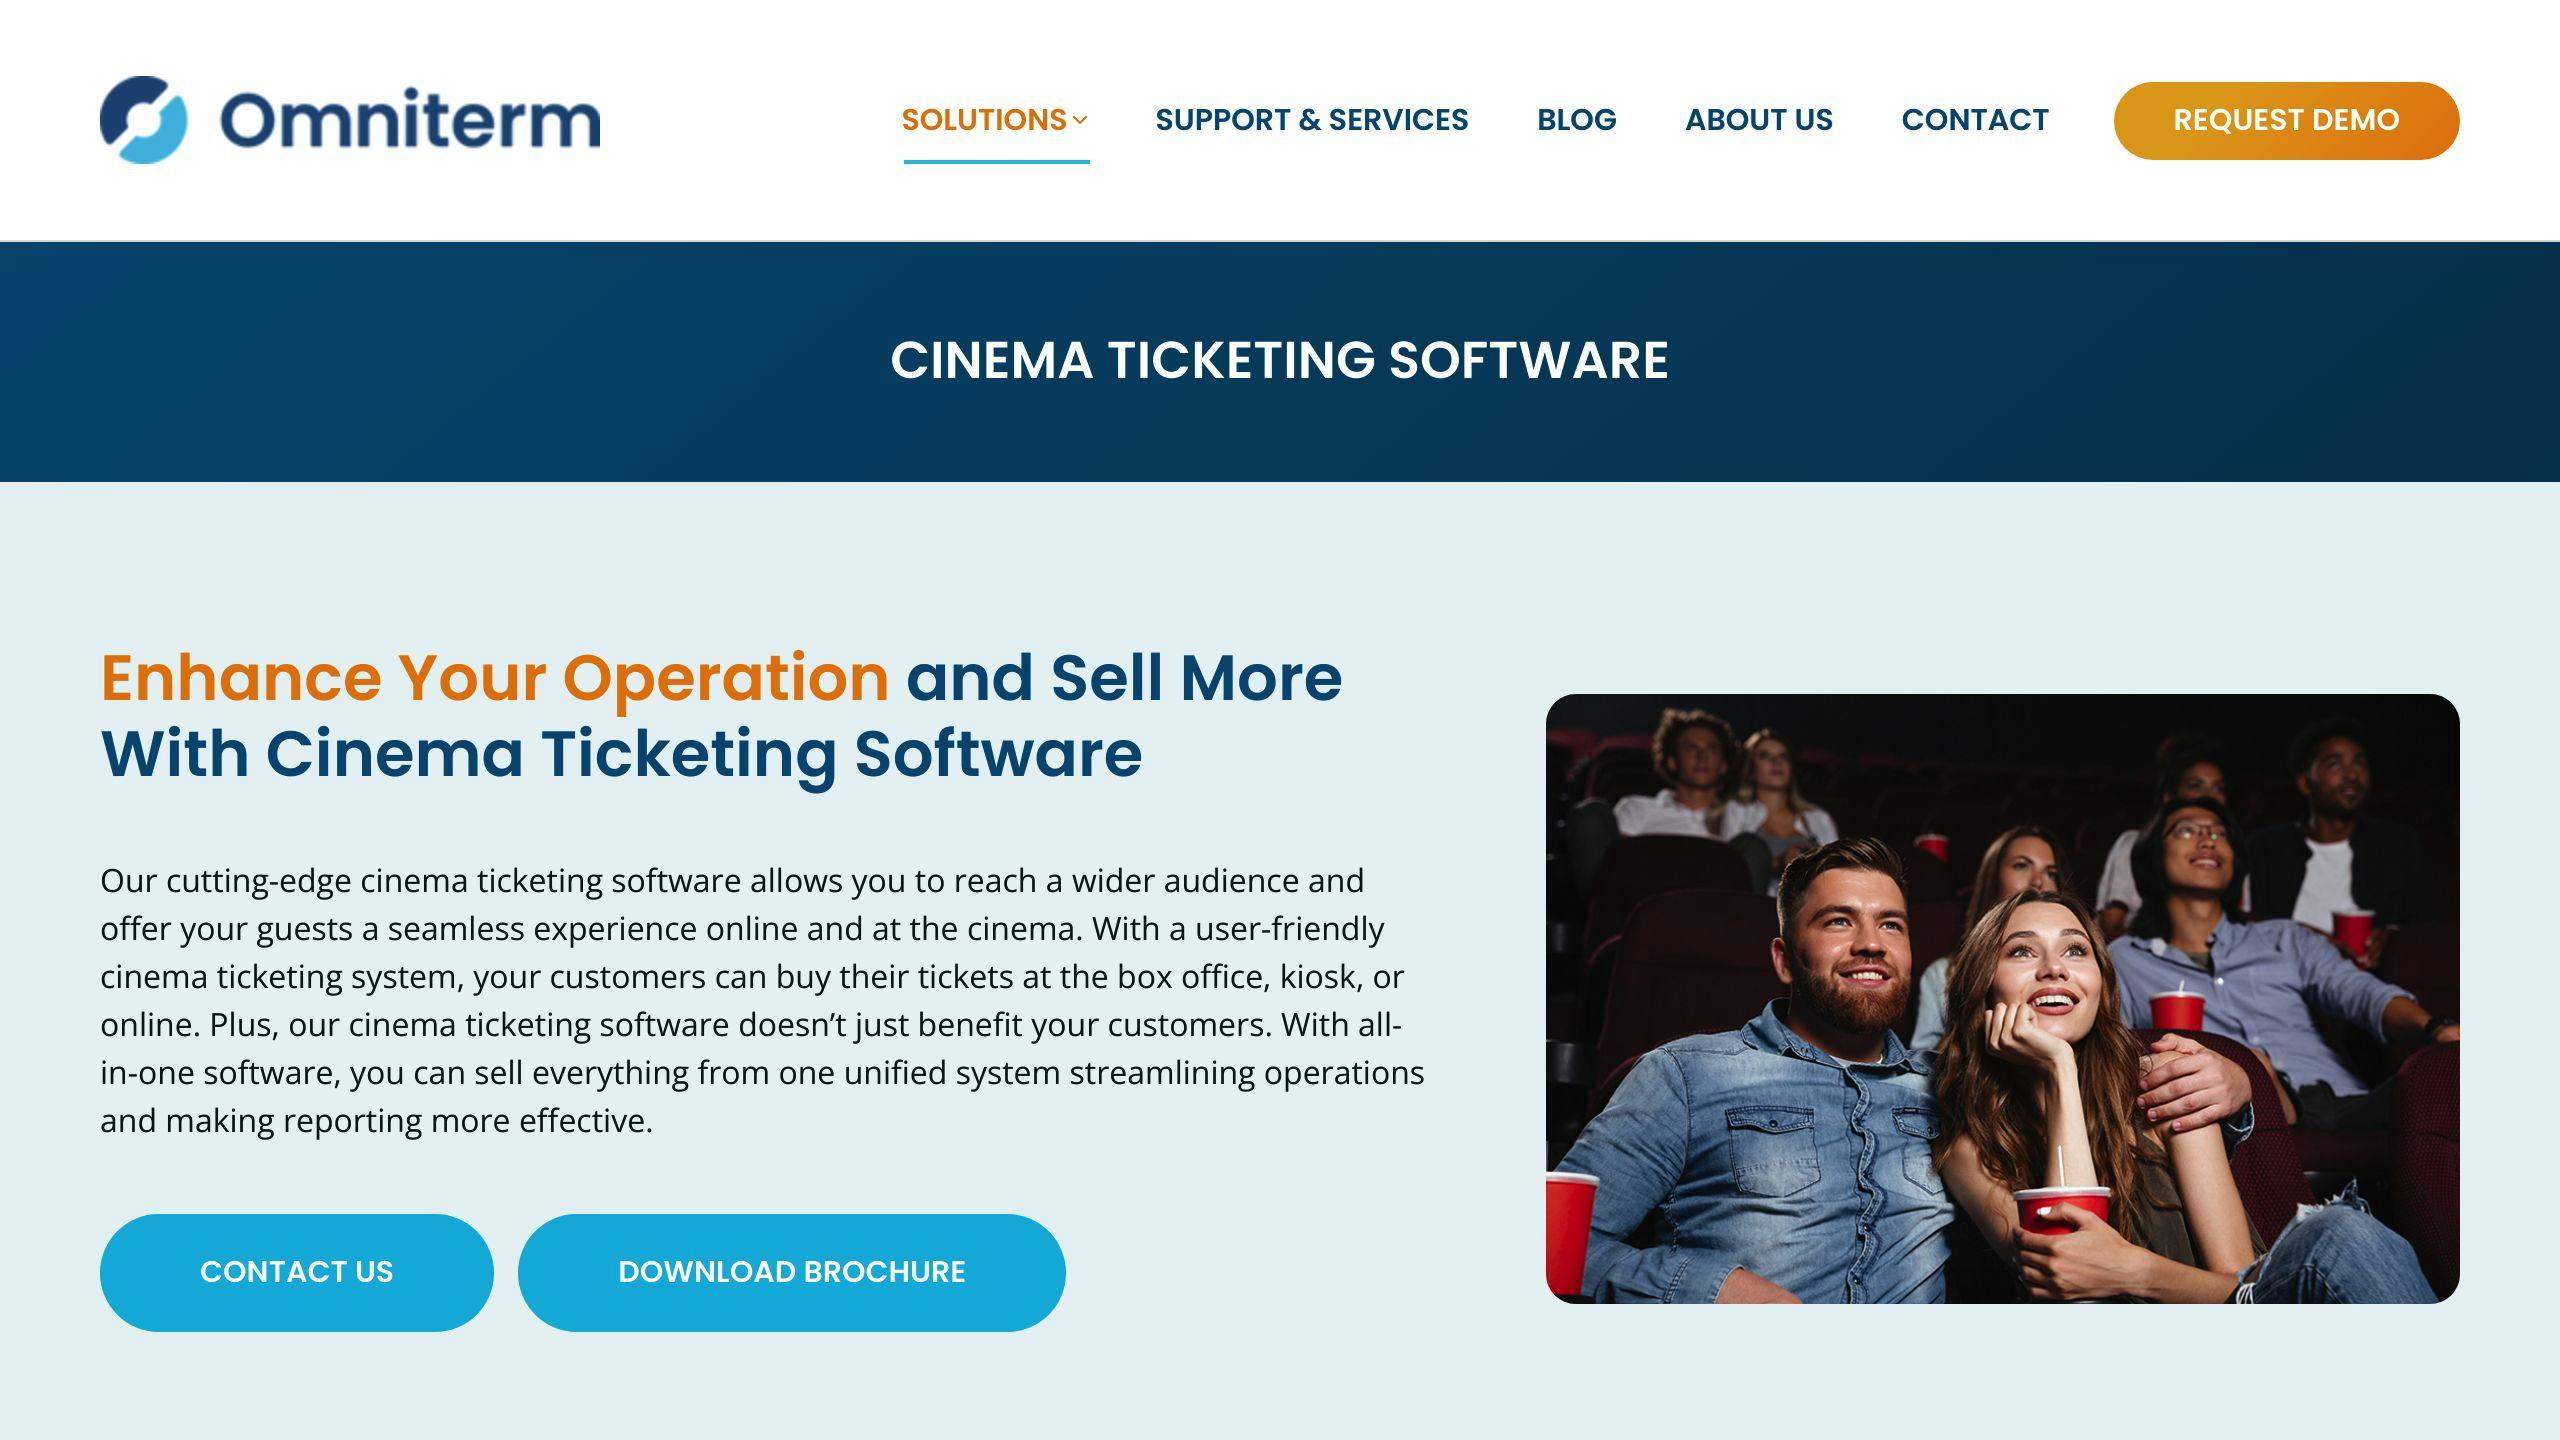 Omniterm Cinema Ticketing Software